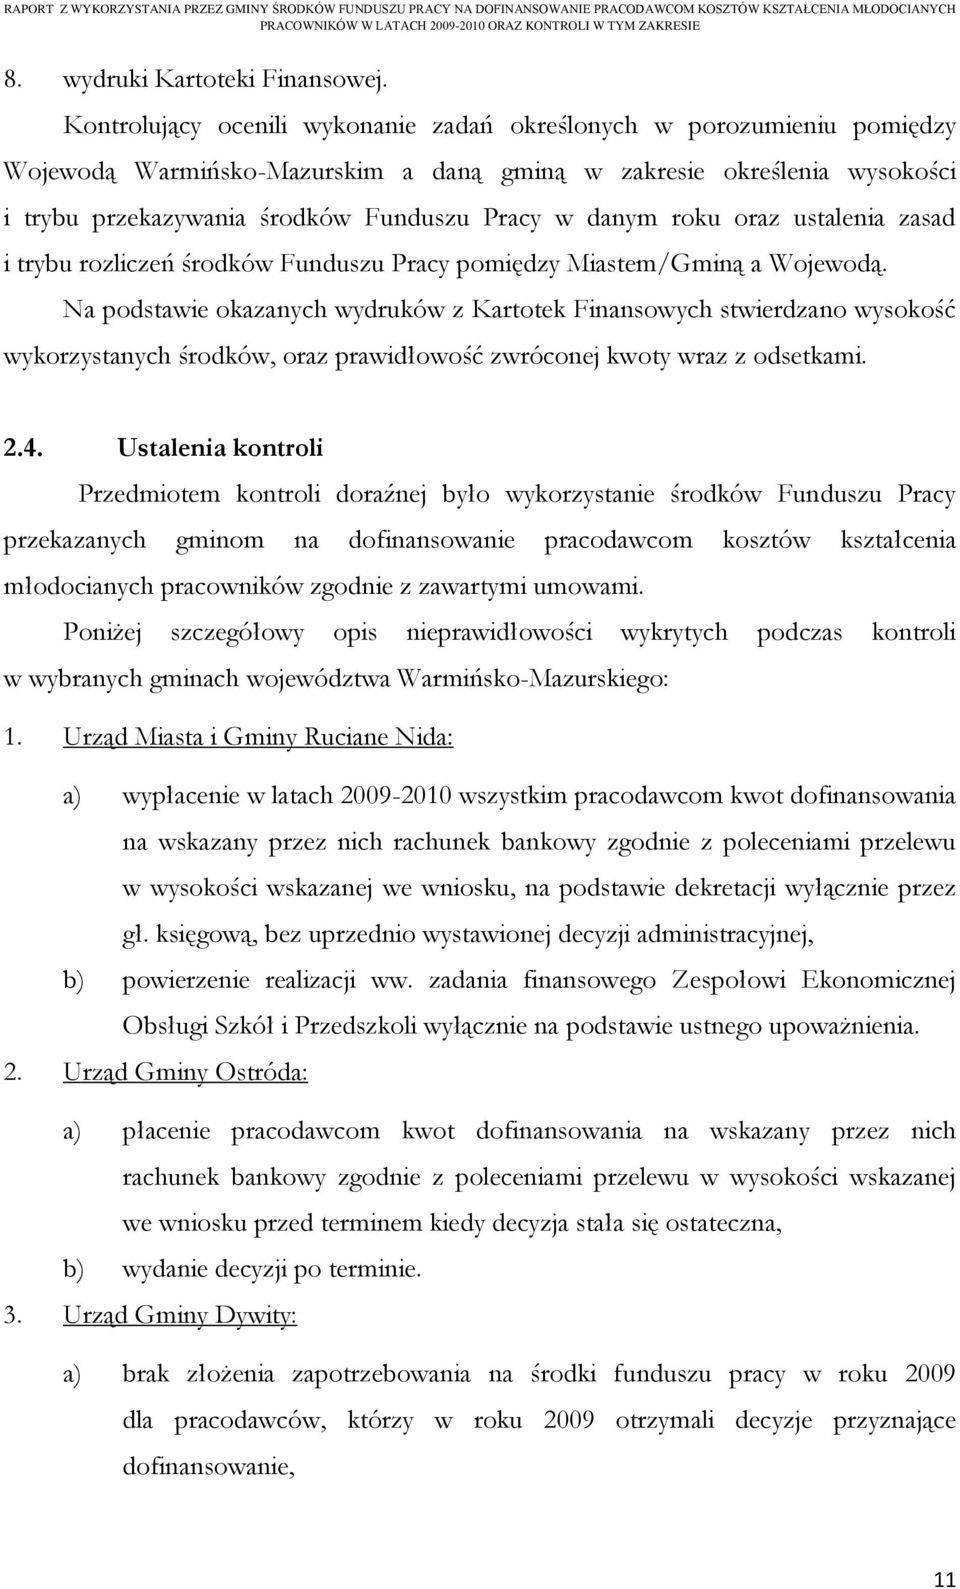 roku oraz ustalenia zasad i trybu rozliczeń środków Funduszu Pracy pomiędzy Miastem/Gminą a Wojewodą.